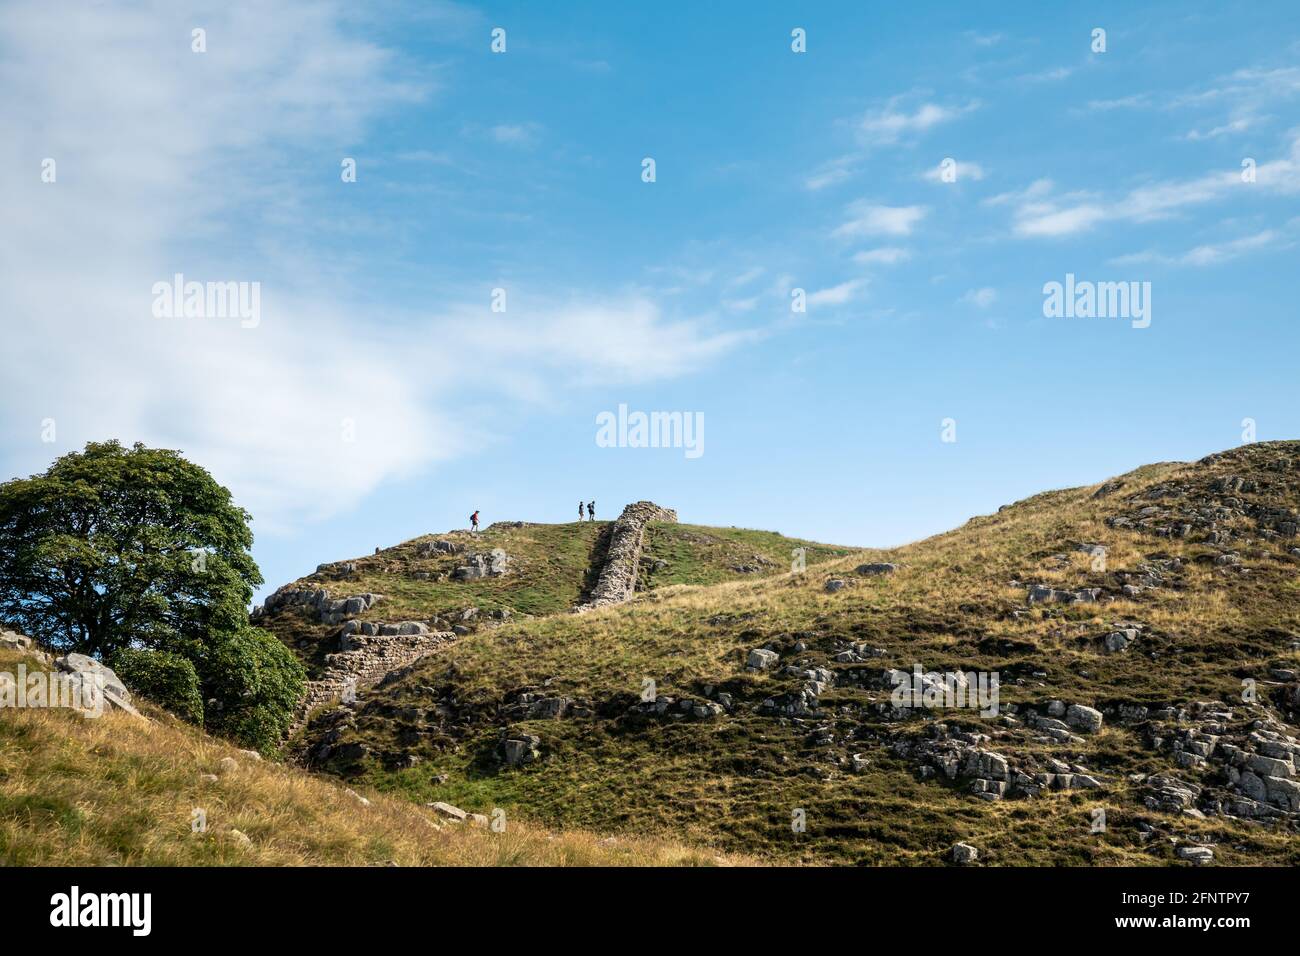 Northumberland Reino Unido: Muro de Adriano construido sobre altos acantilados (Muro Romano) en un soleado día de verano en la campiña inglesa Foto de stock